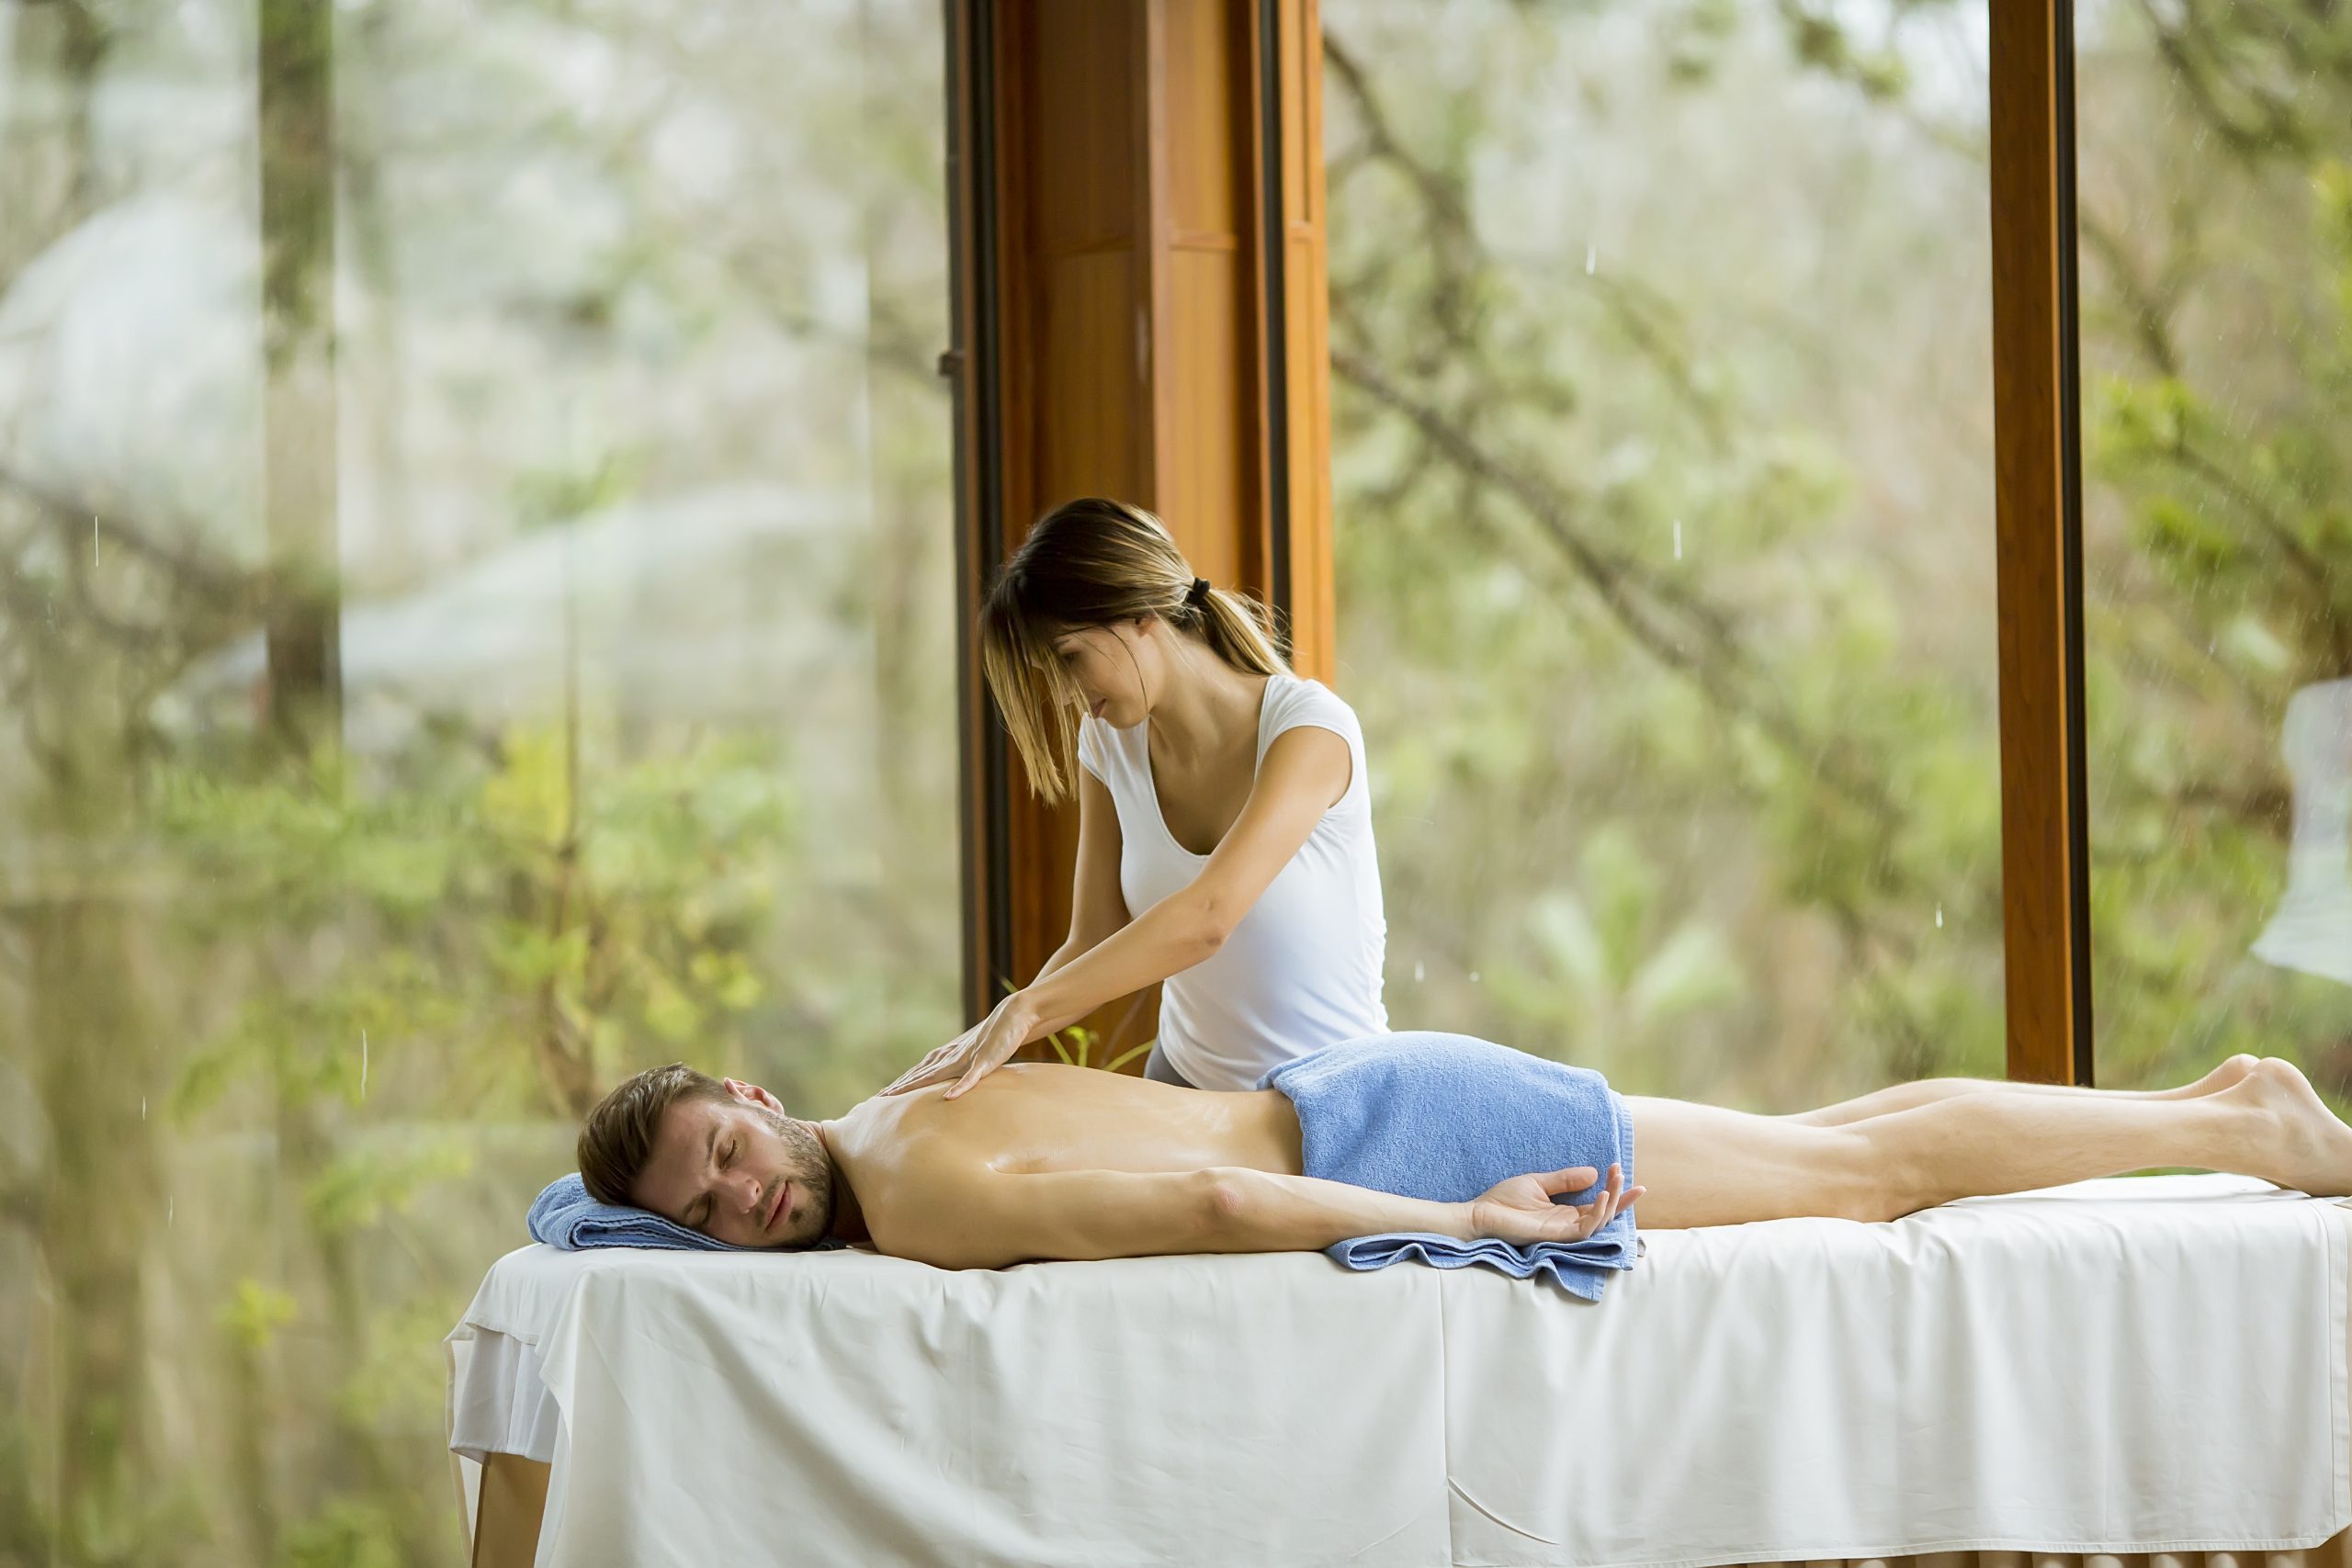 Come scegliere il miglior fornitore di massaggi erotici su RubPage